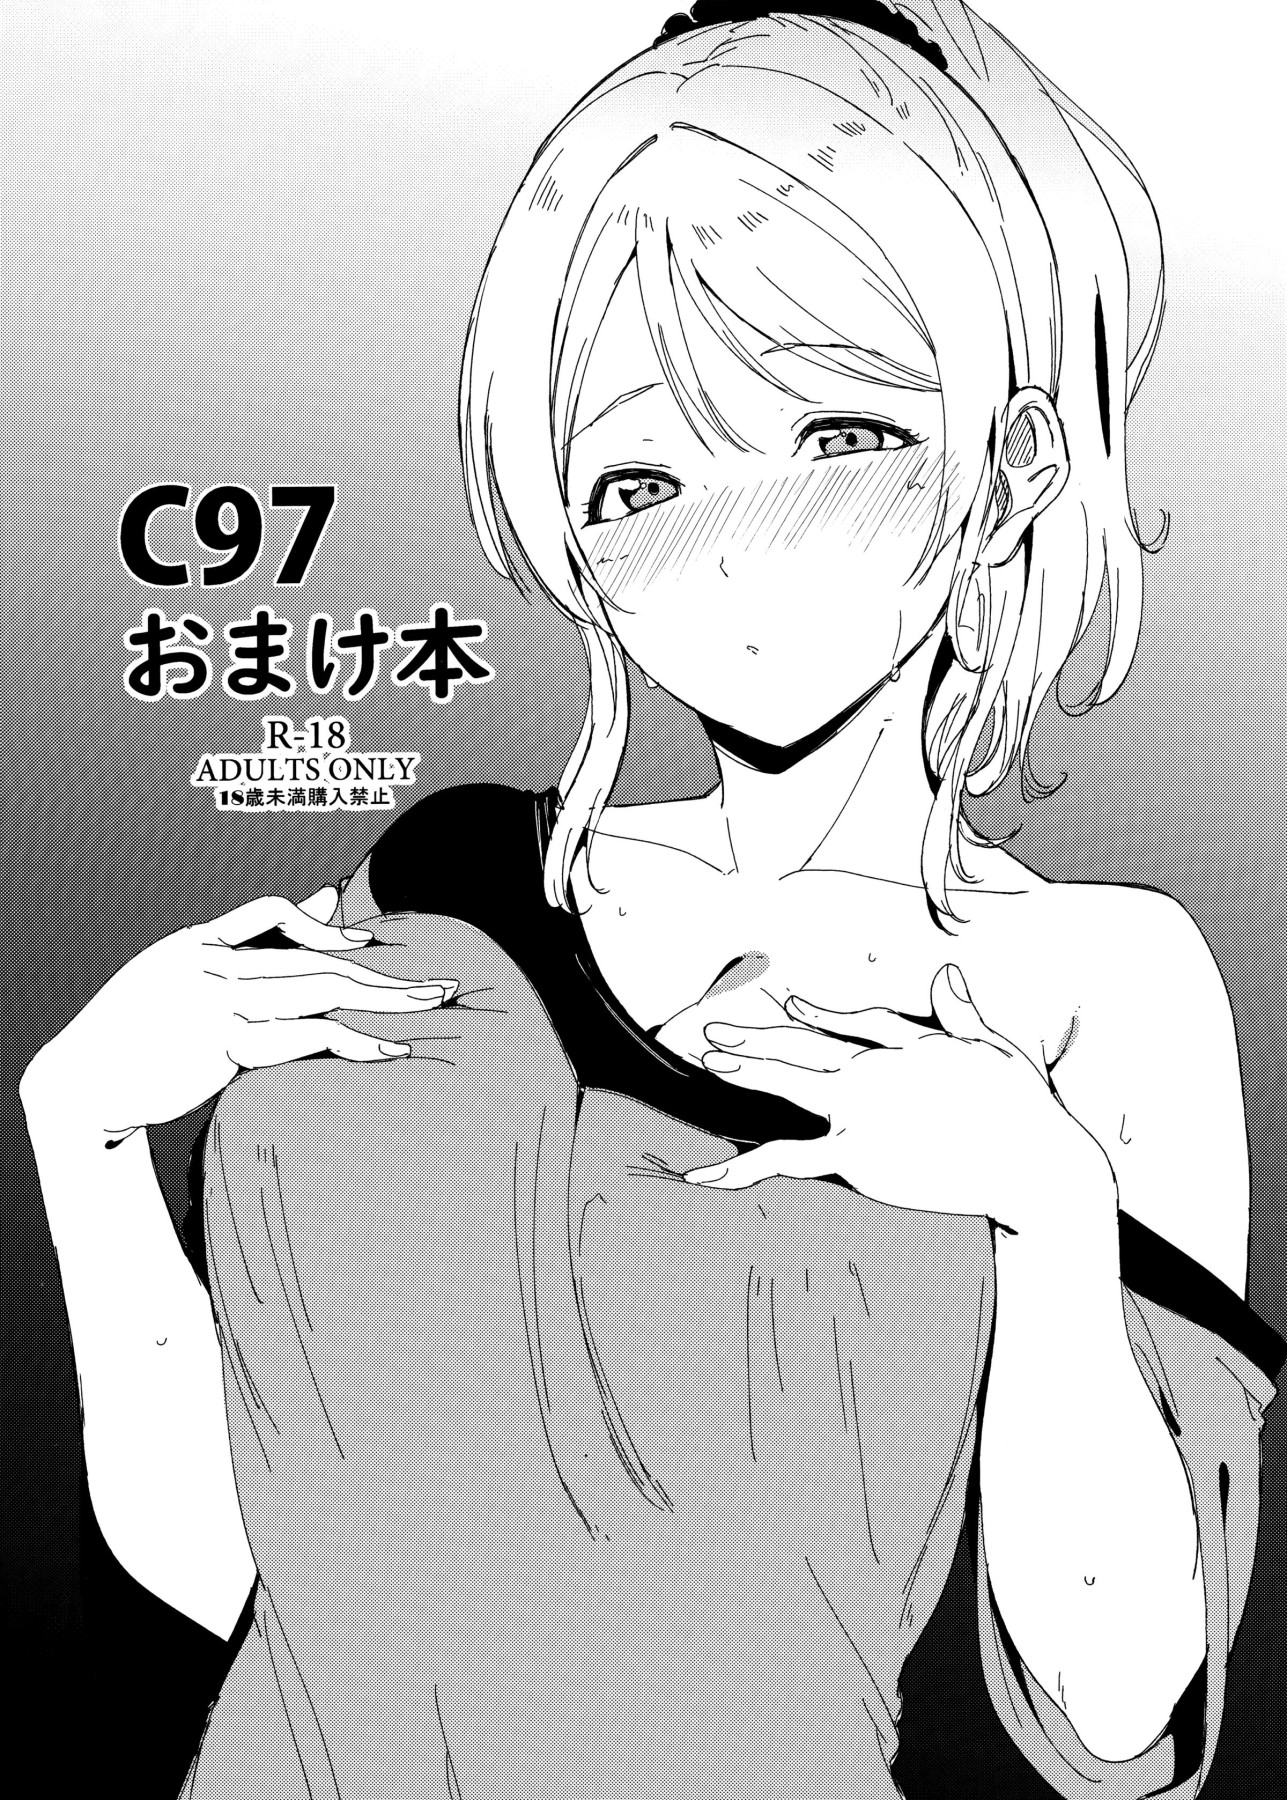 Hentai Manga Comic-C97 Extra Book-Read-1